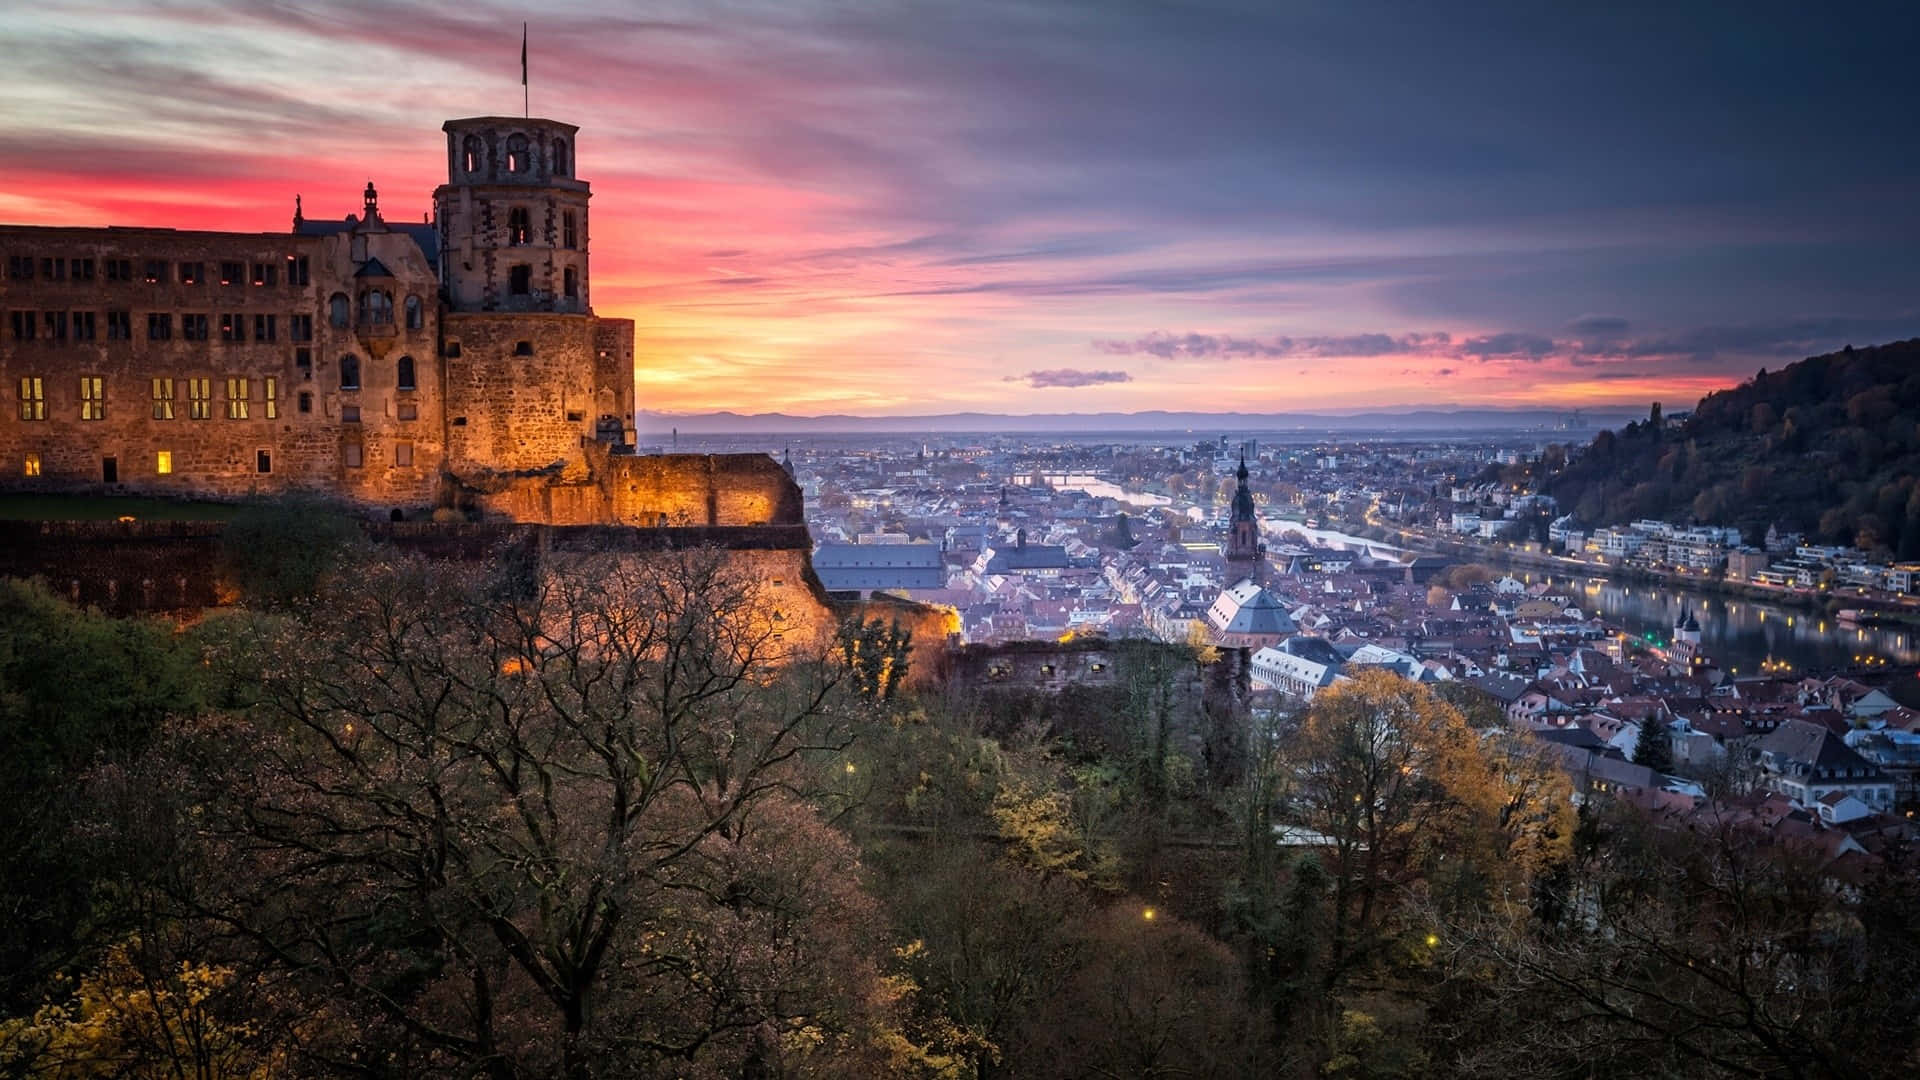 Impresionantepuesta De Sol En El Castillo De Heidelberg Fondo de pantalla